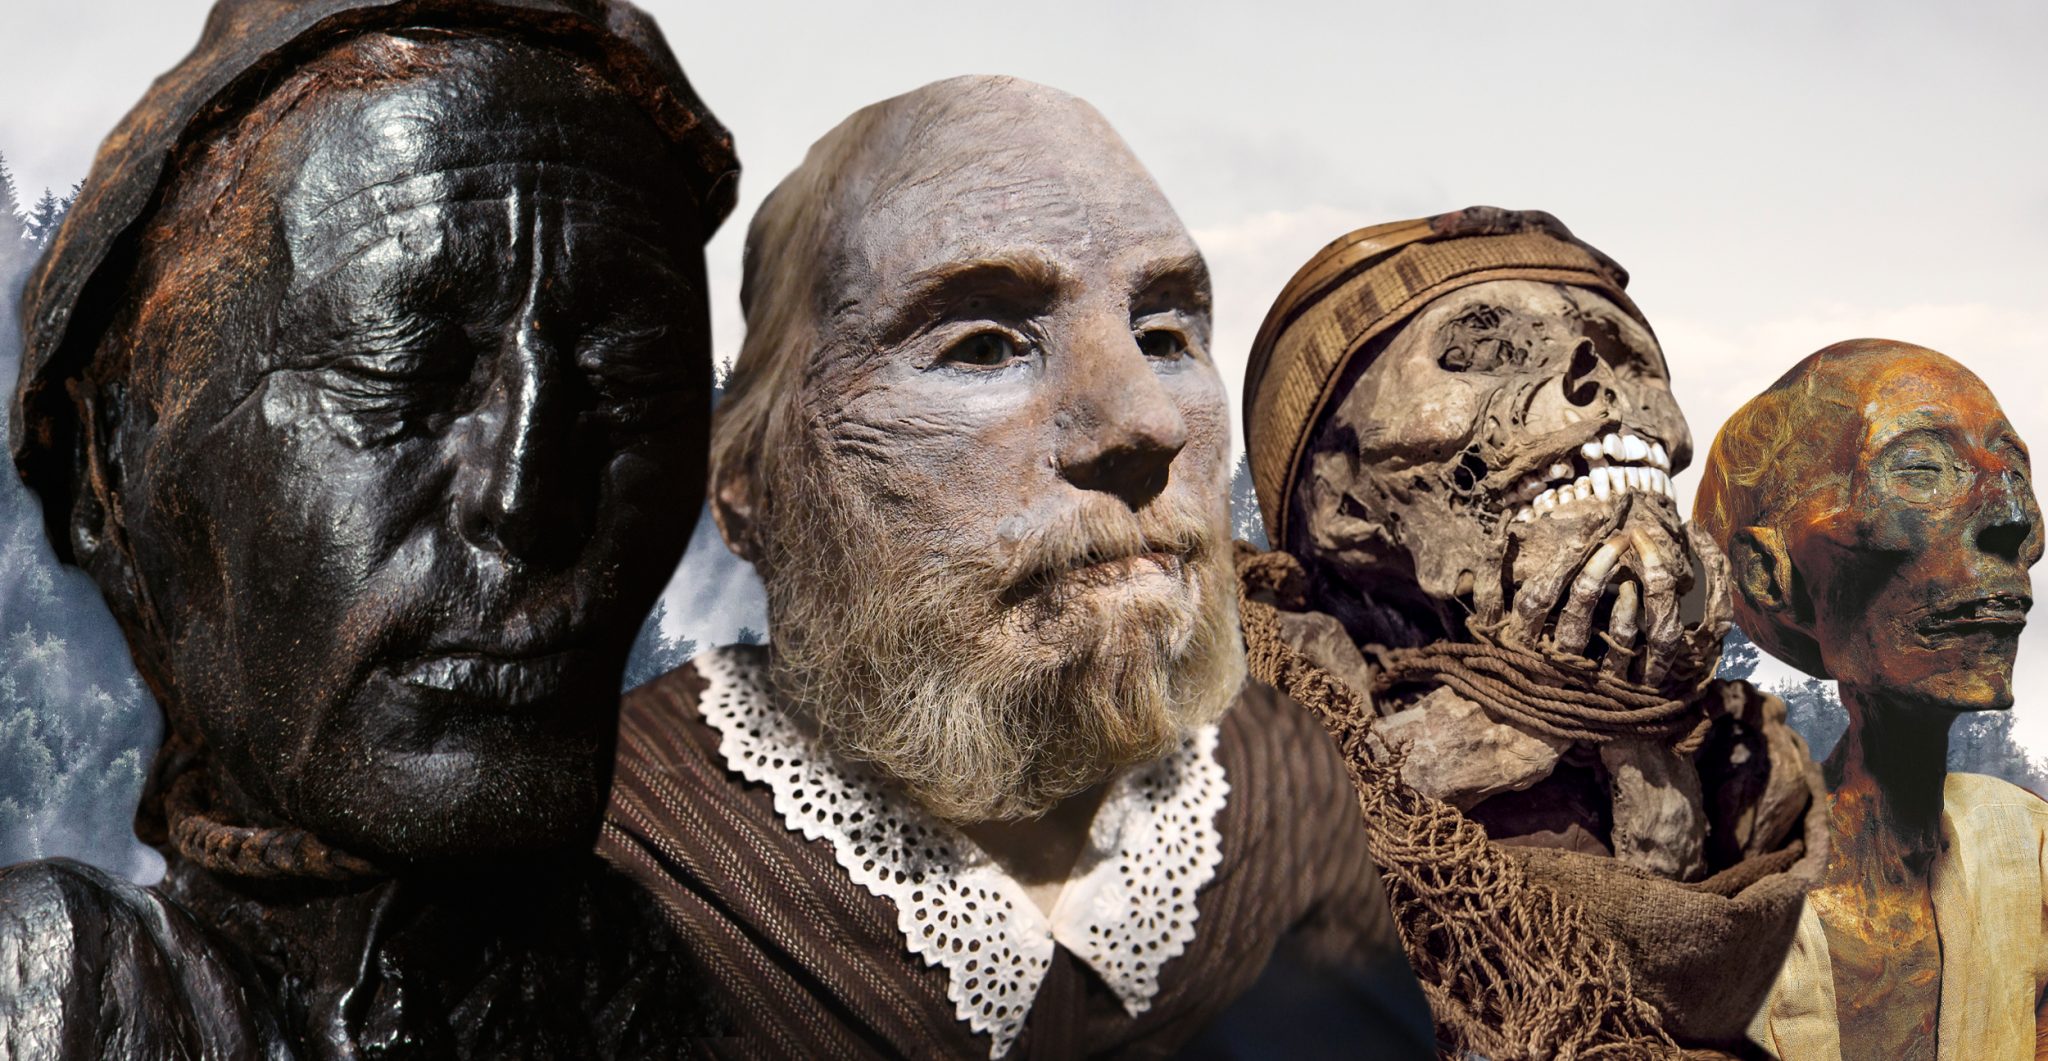 tarim mummies national geographic